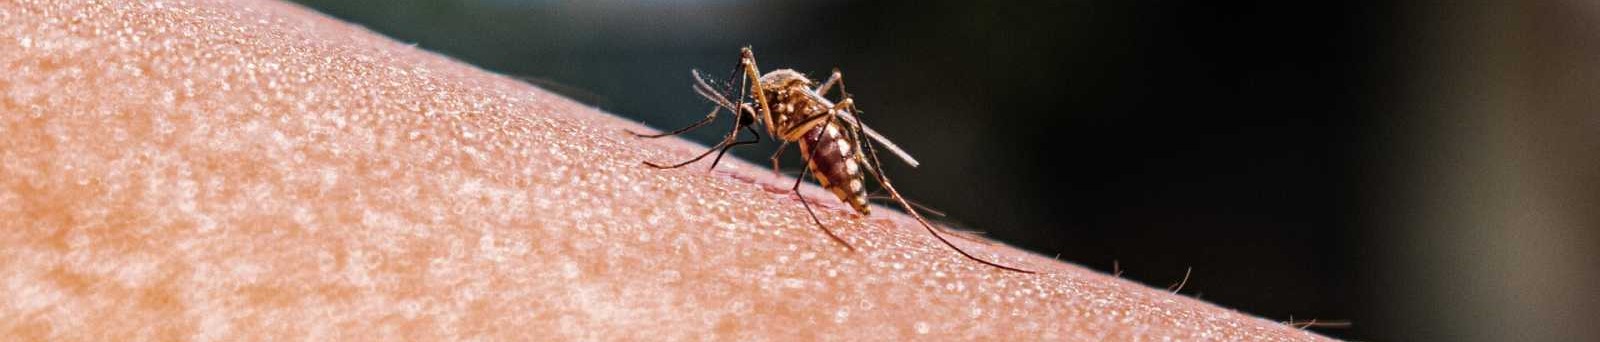 La OMS aprueba una vacuna que podría erradicar la malaria...